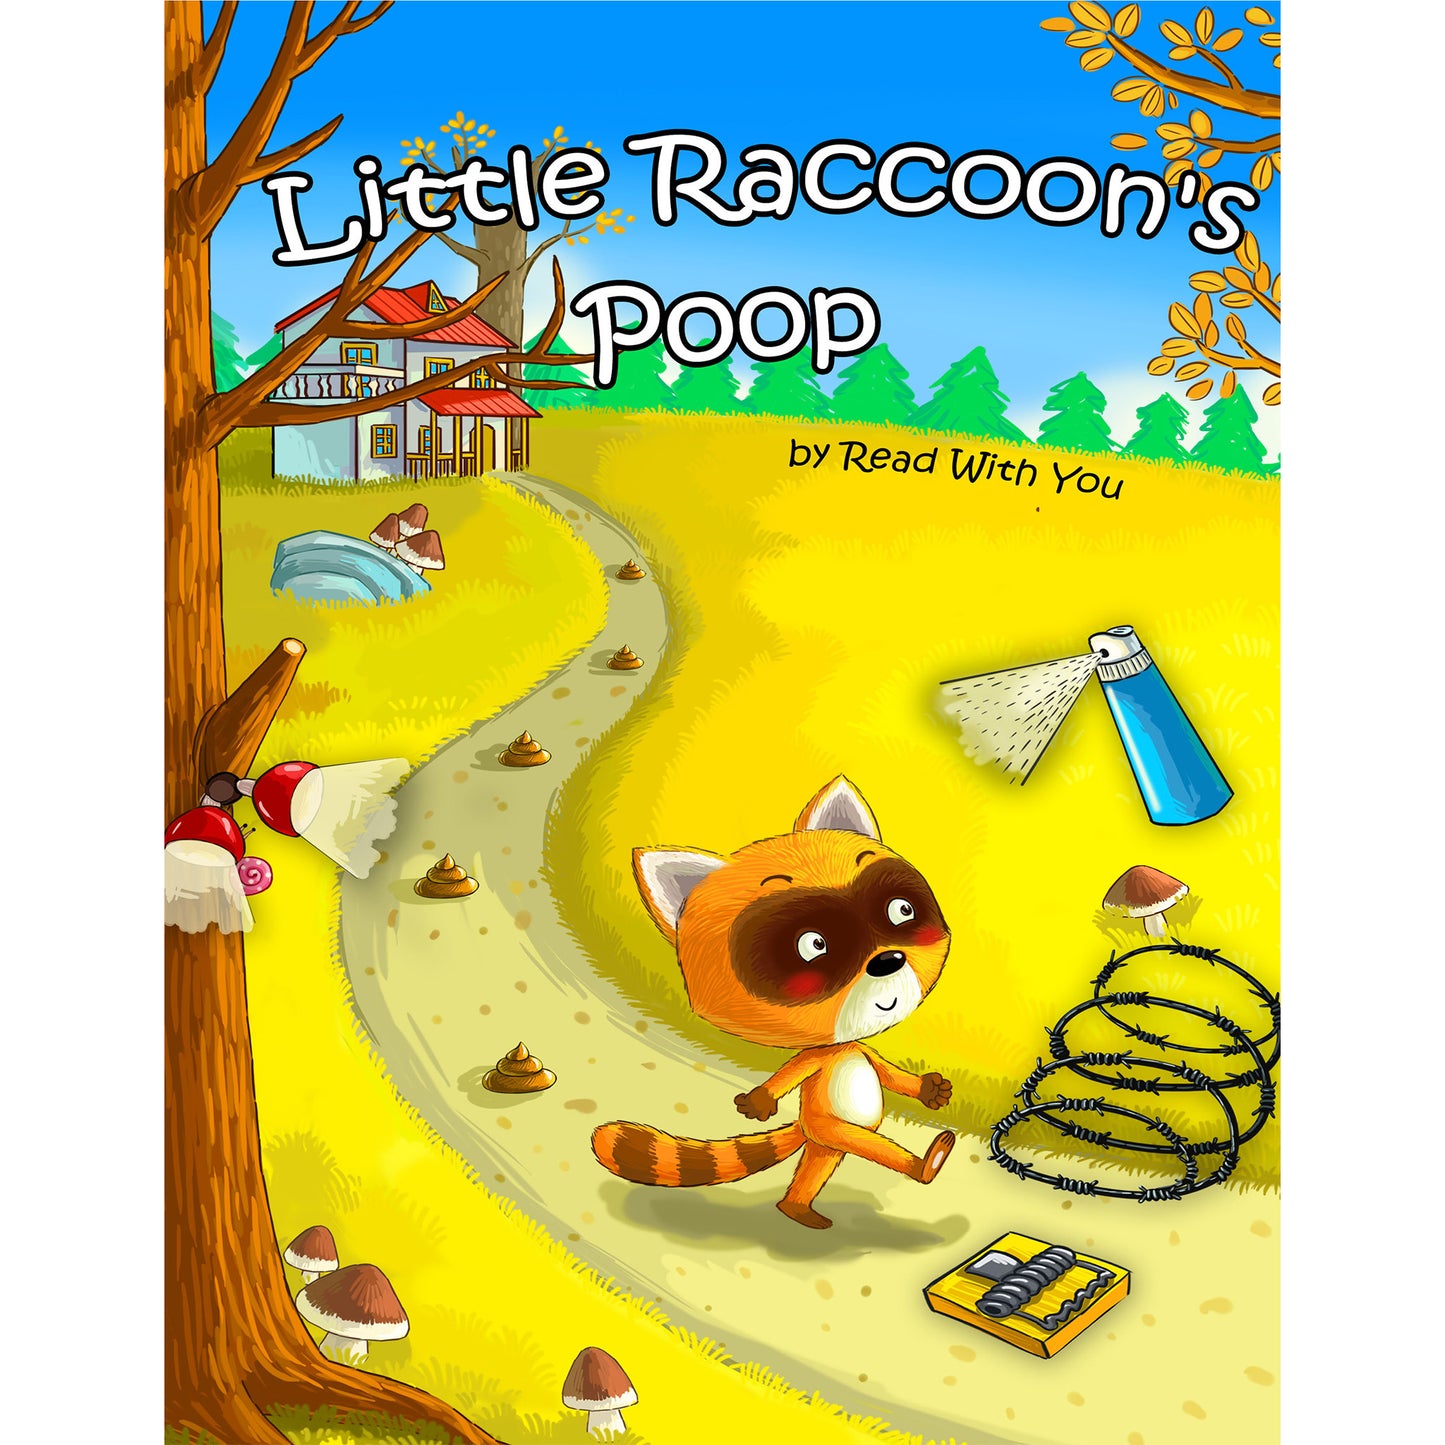 Little Raccoon's Poop